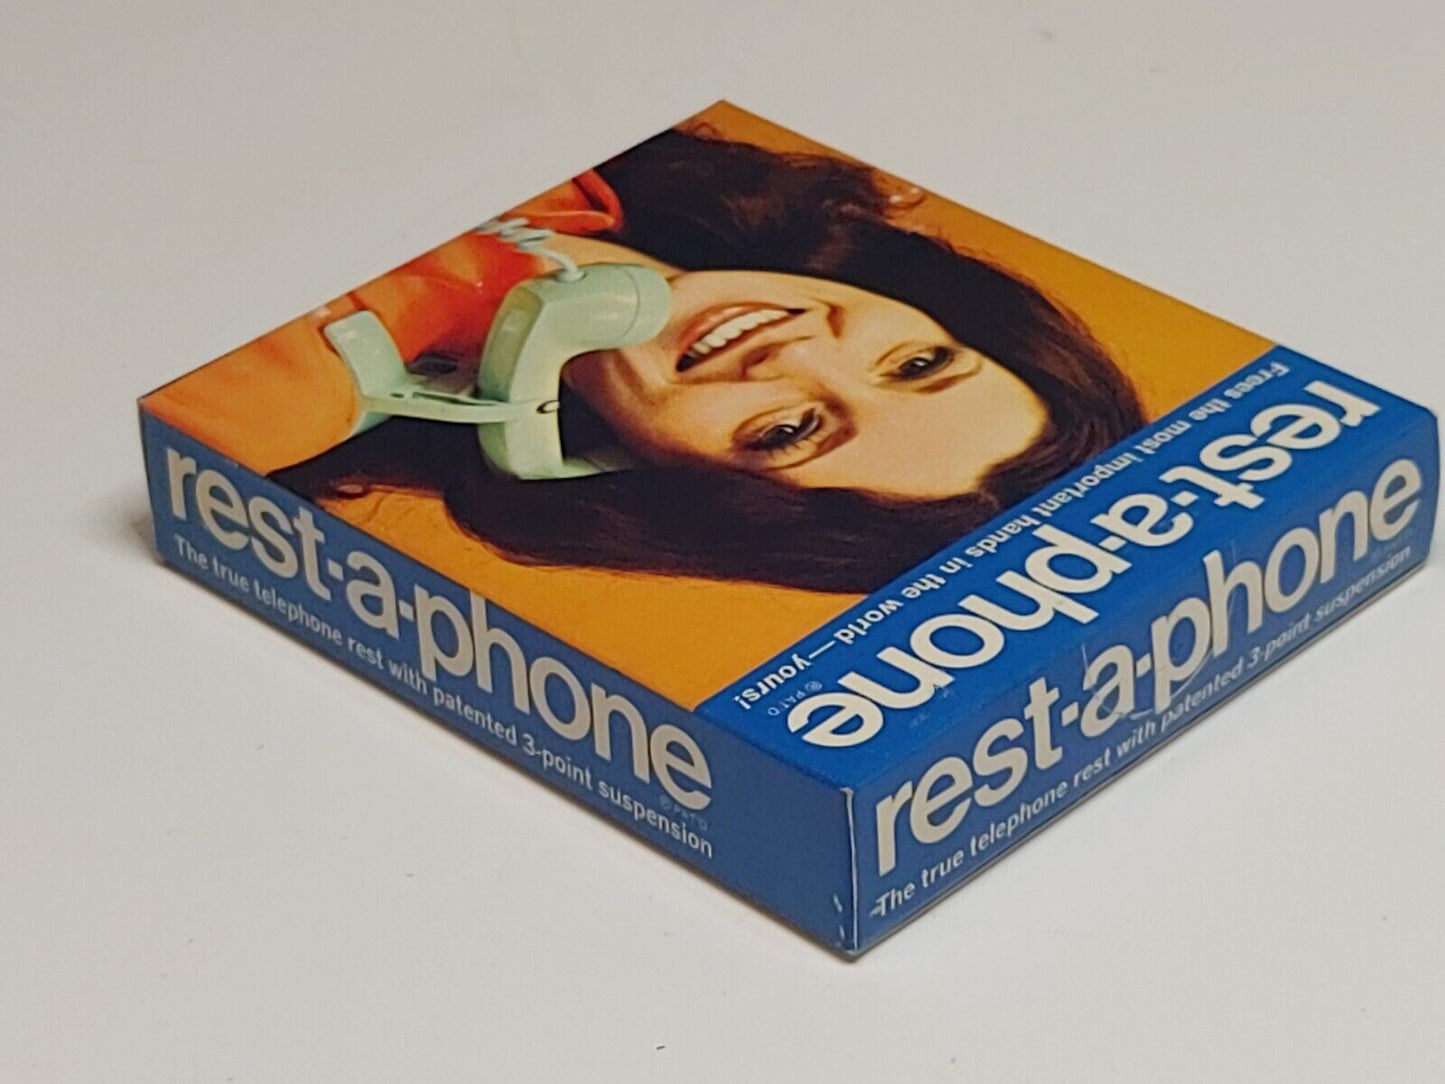 NOS VTG USA Rest-A-Phone Landline Shoulder Support Telephone Phone Rest - Black